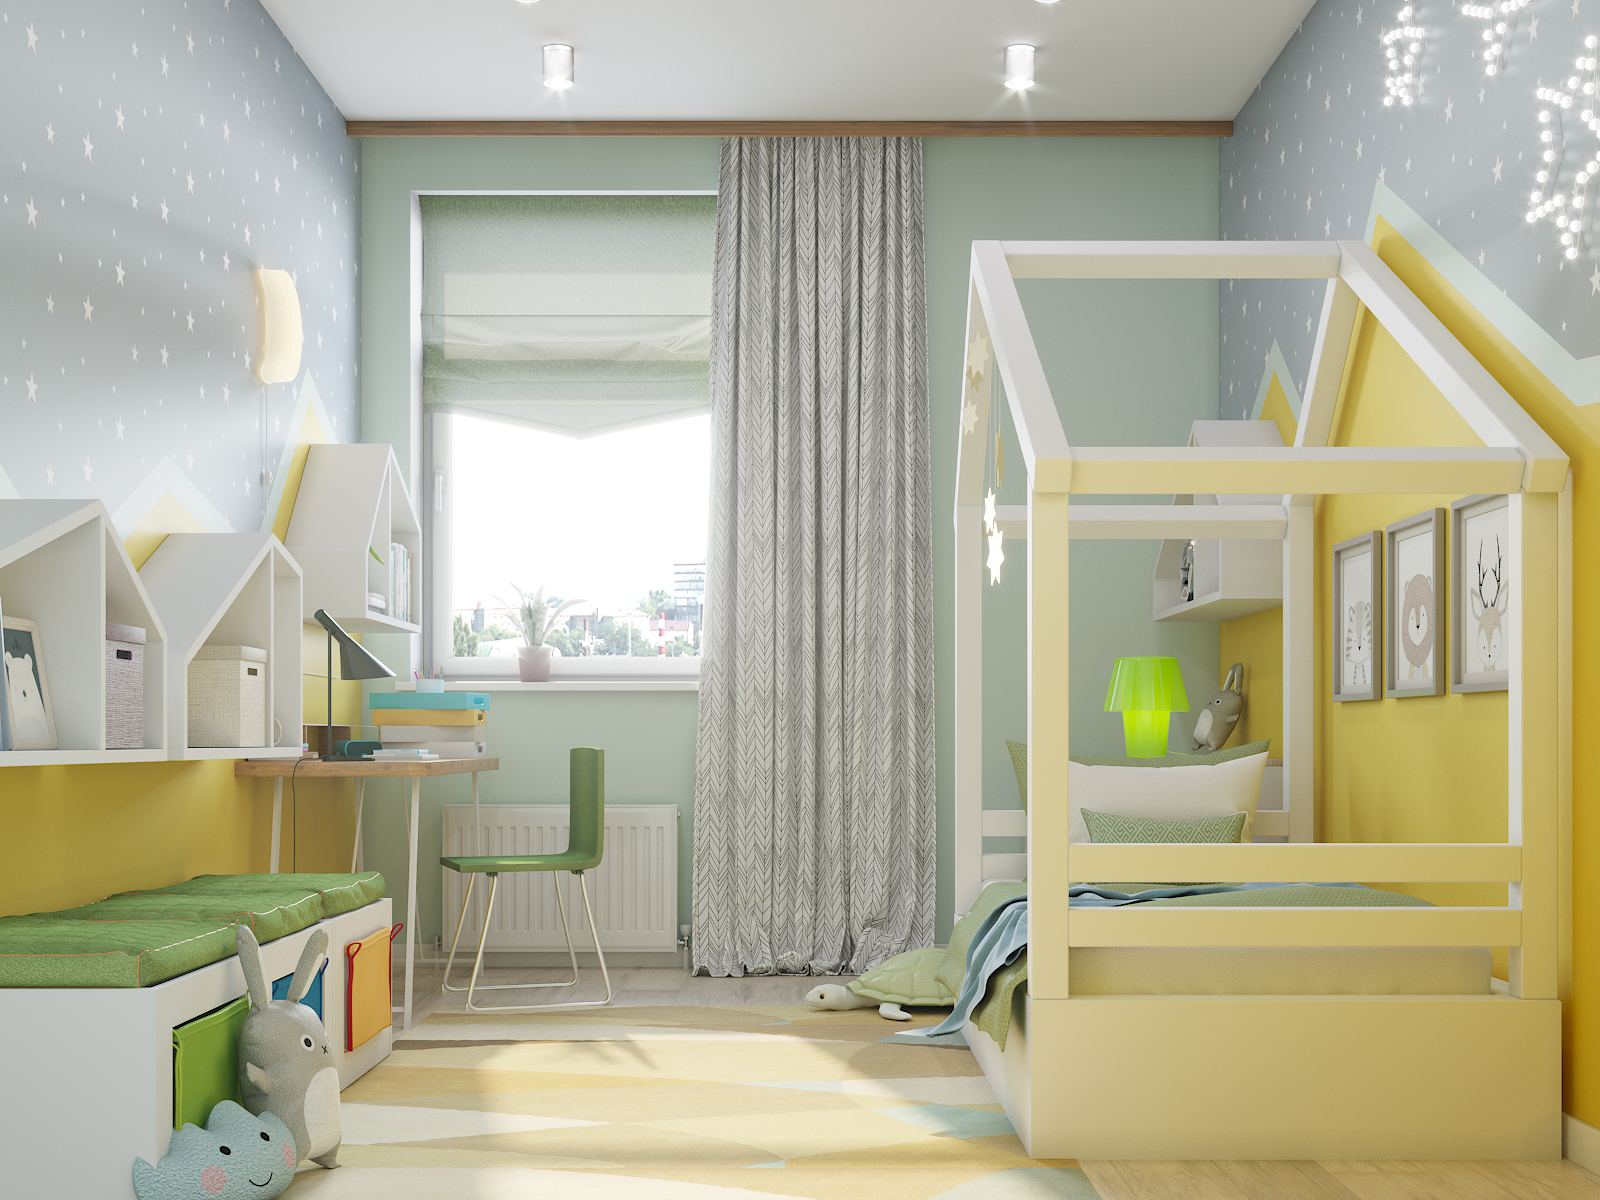 ज़िगज़ैग के साथ बच्चों का कमरा 3d max corona render में प्रस्तुत छवि